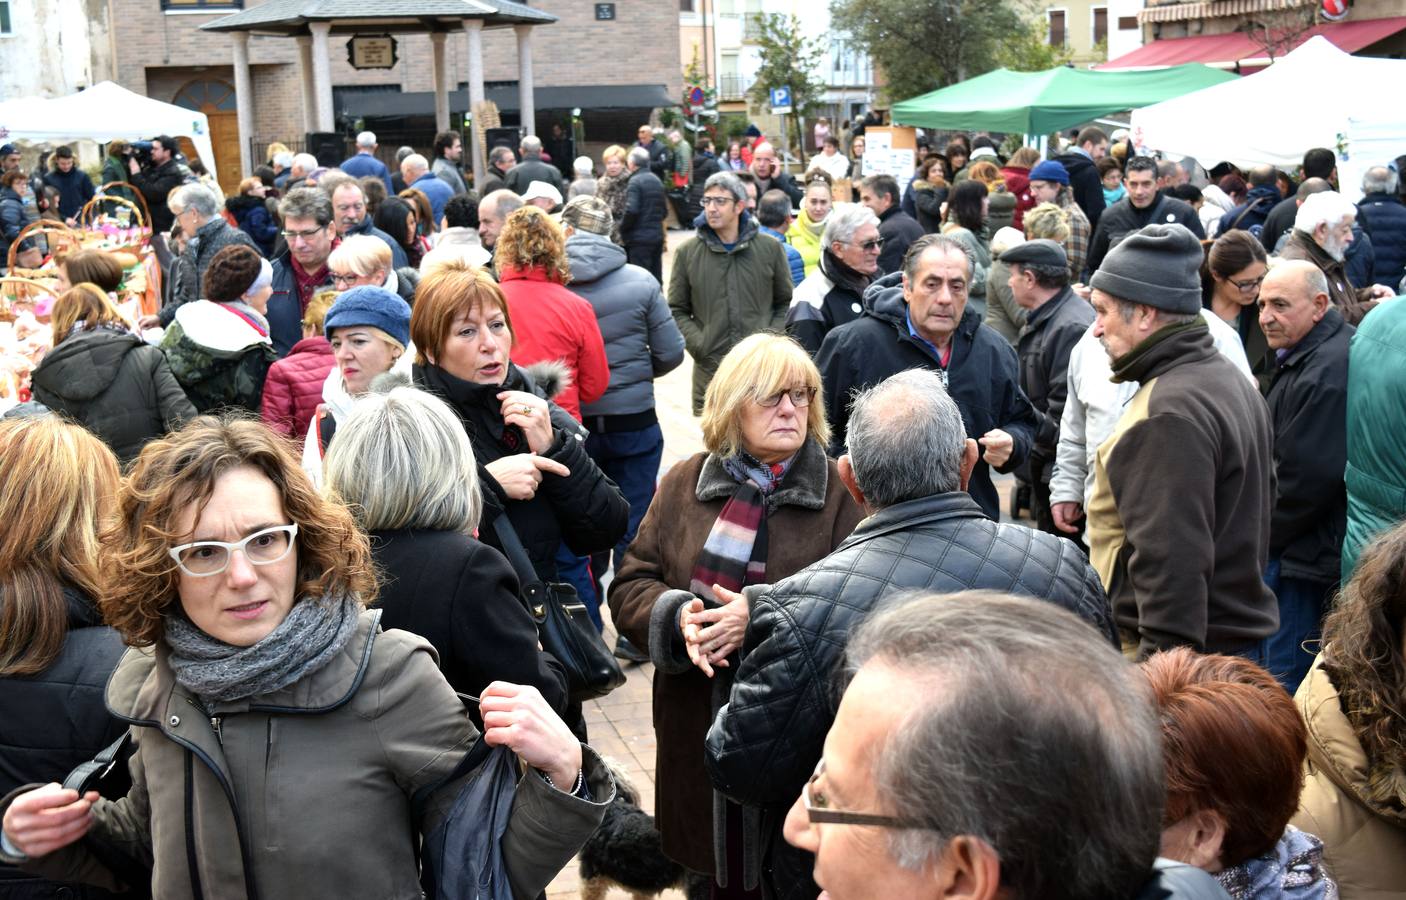 La plaza de la Tela de Nalda ha acogido este domingo la XIX edición de la jornada de la Pasa, a la que asistió numeroso público a pesar del tiempo desapacible.